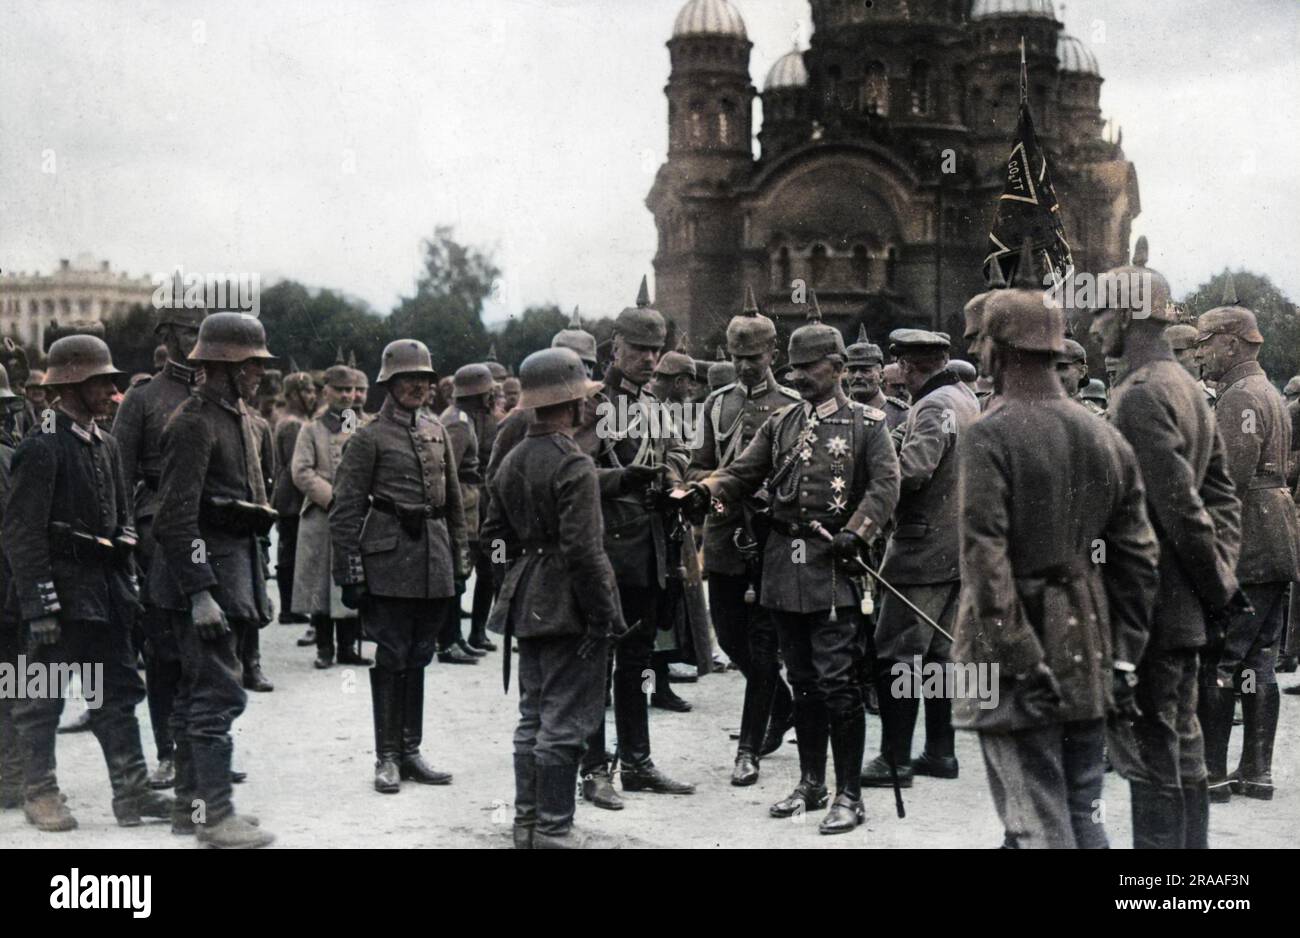 Il Kaiser Guglielmo II (1859-1941), imperatore tedesco, presentò le croci di ferro alle truppe di Varsavia, in Polonia, poco dopo che la città fu catturata dall'esercito austro-tedesco durante la prima guerra mondiale. Data: Settembre 15 Foto Stock